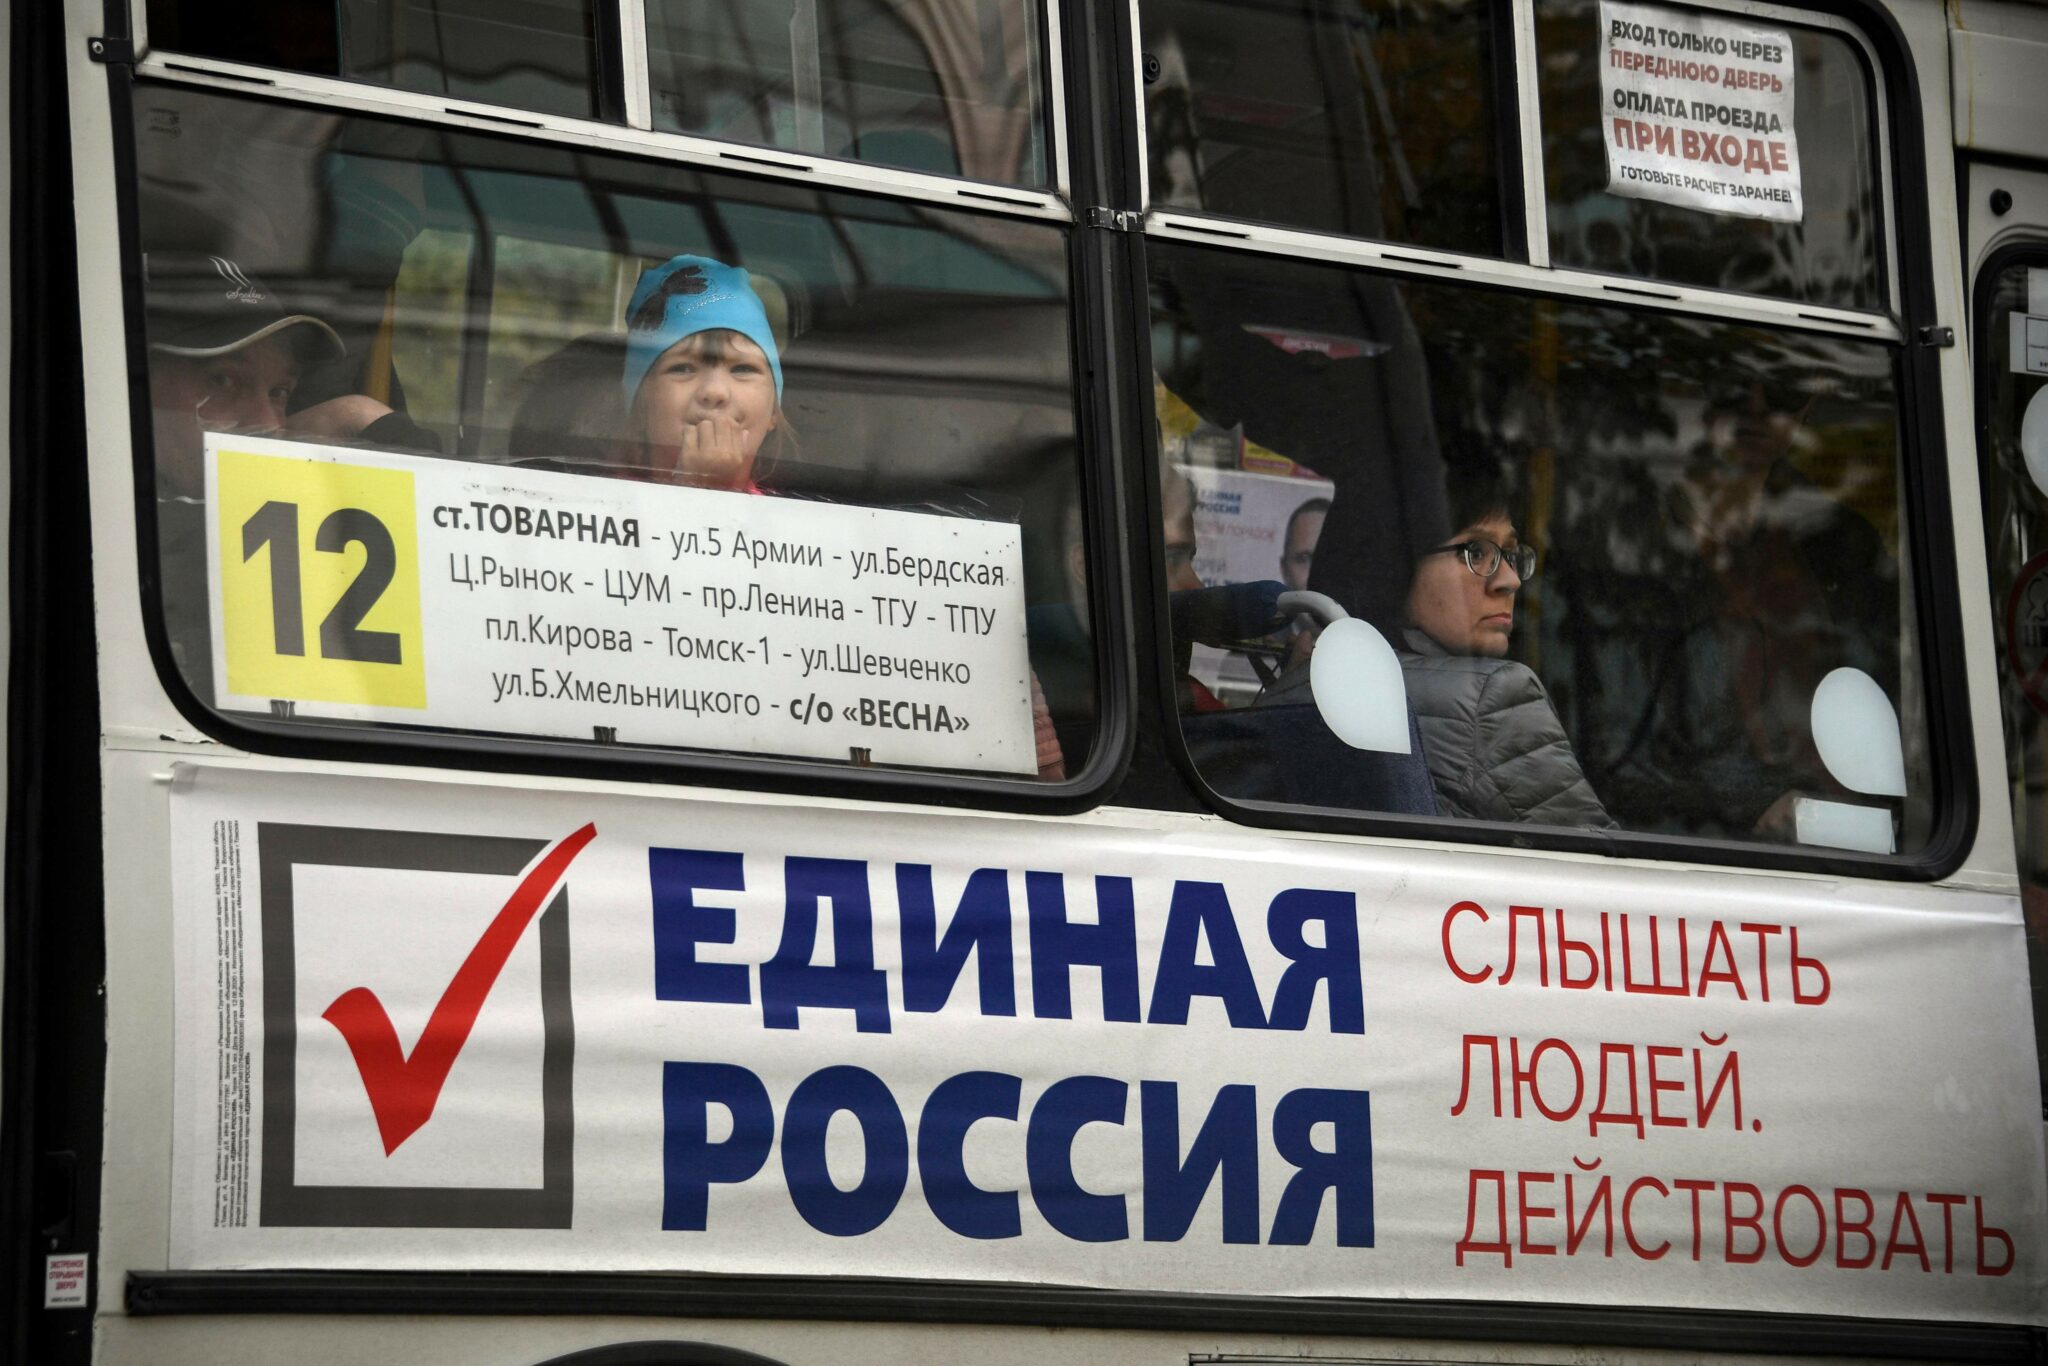 Плакат с рекламой "Единой России" на автобусе. Фото ALEXANDER NEMENOV / TASS / Scanpix / Leta